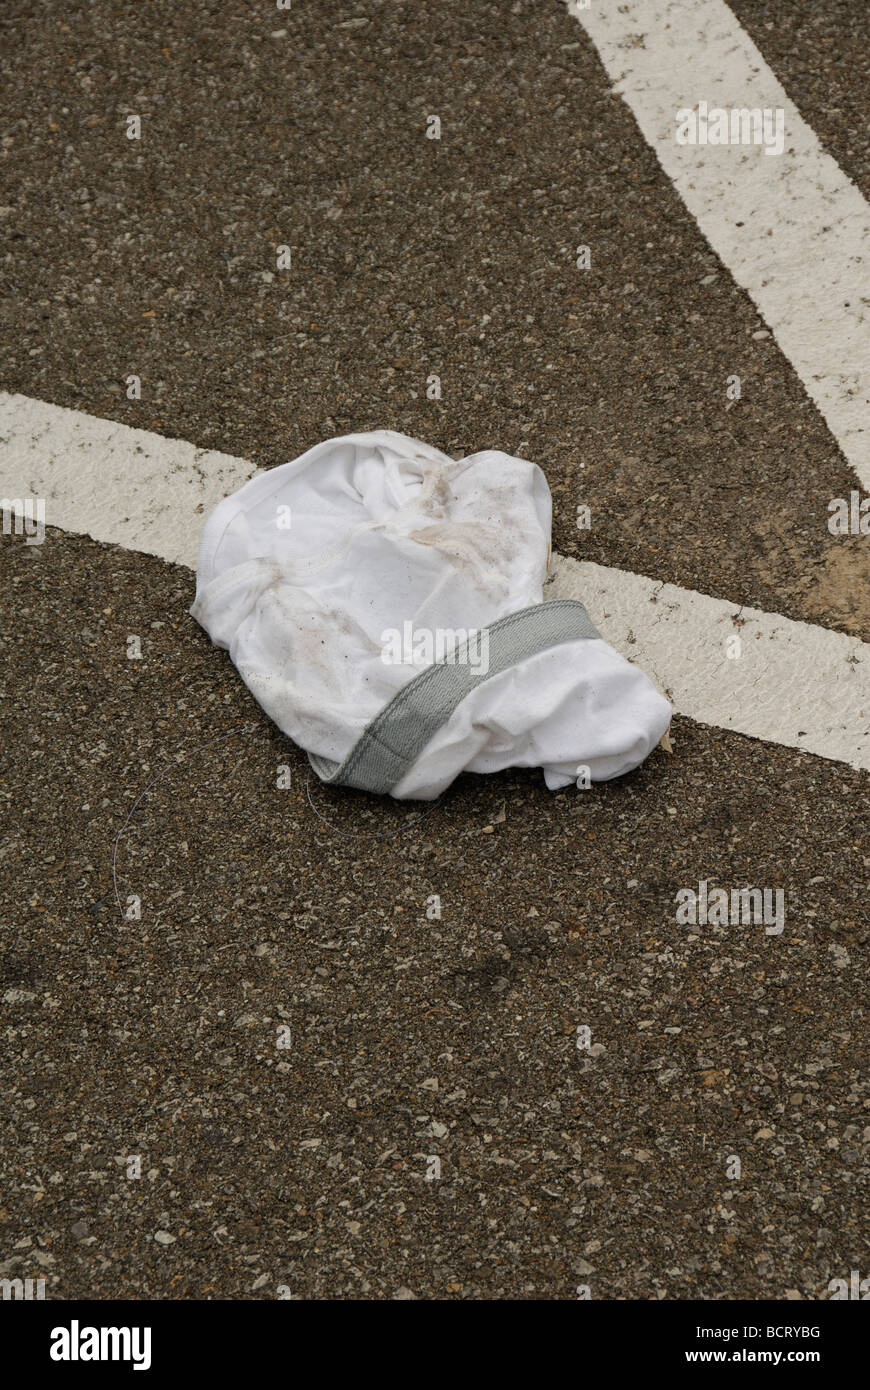 Underwear found in parking lot Stock Photo